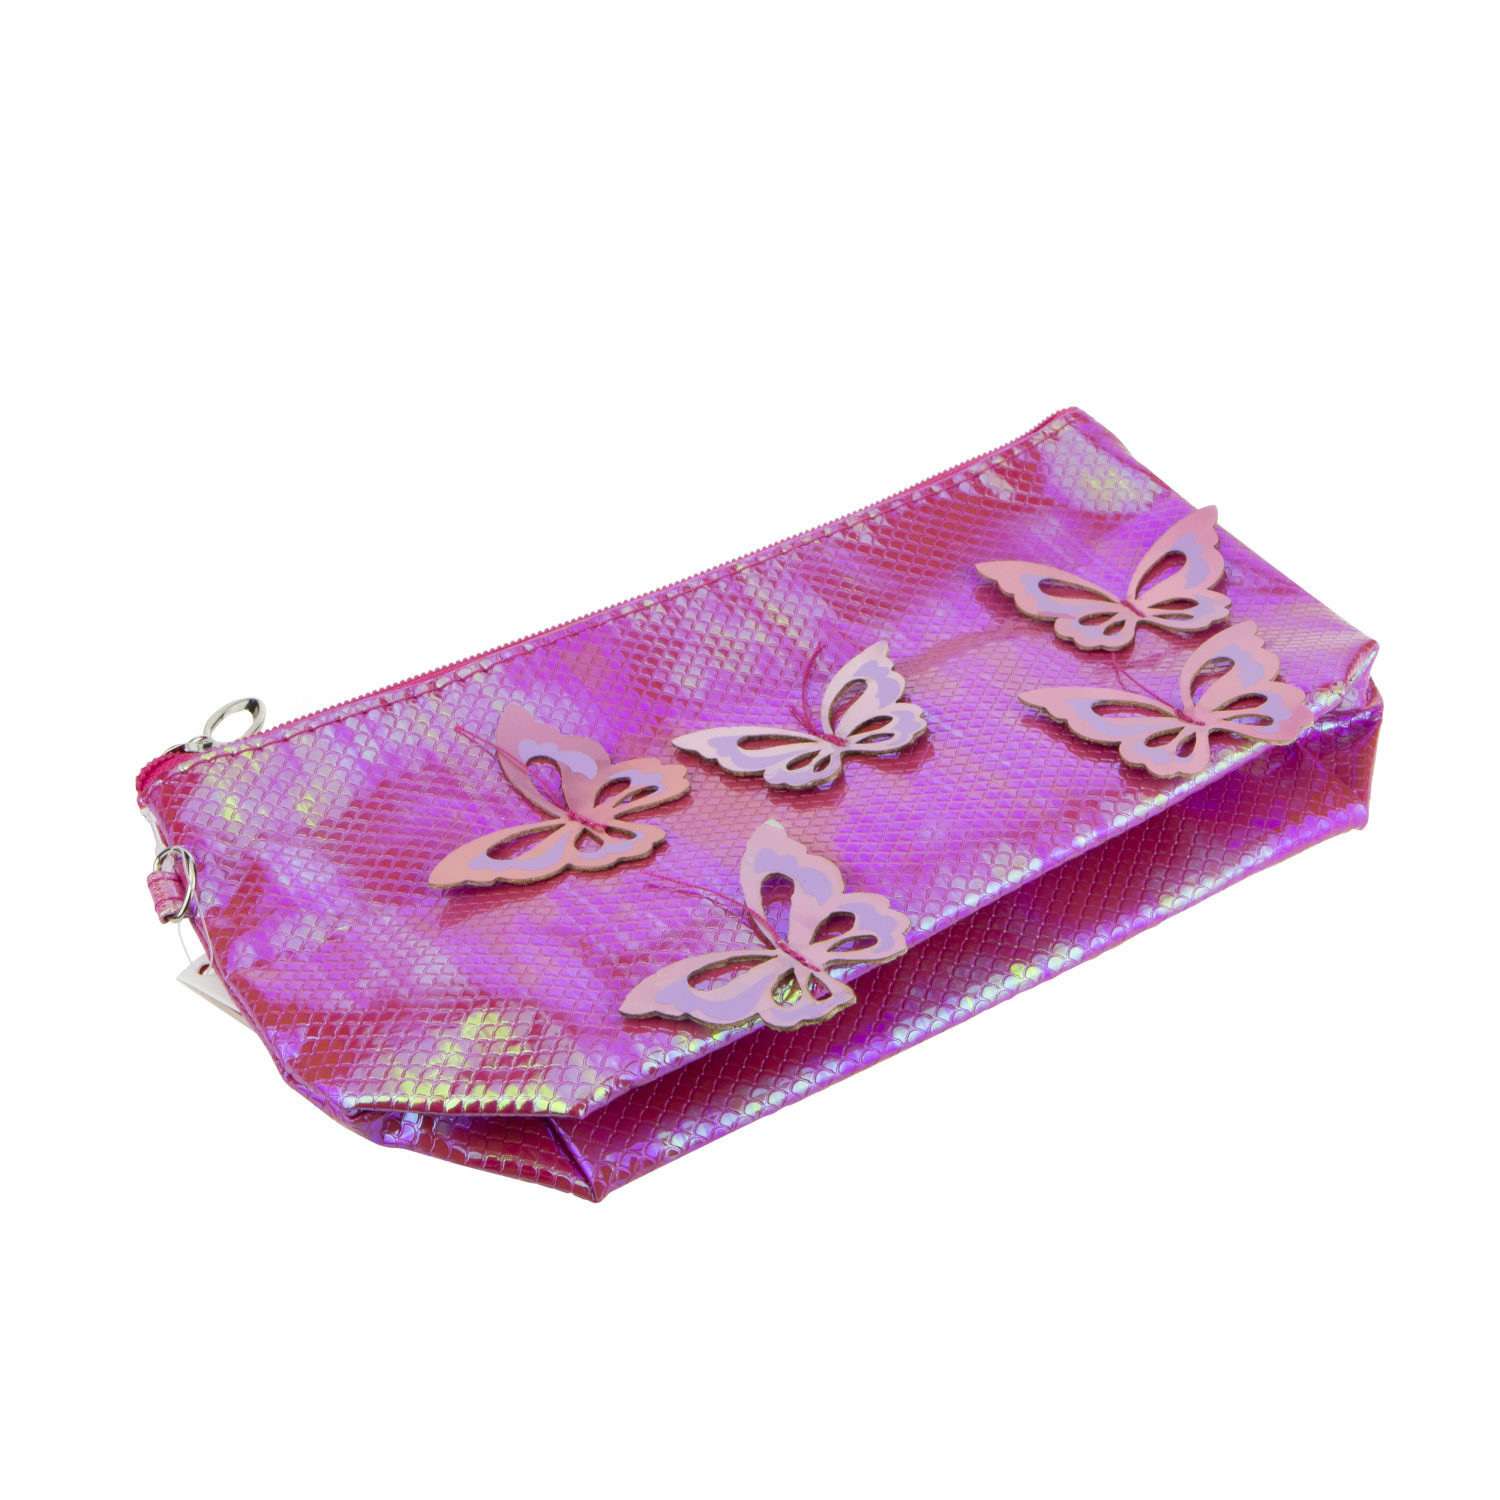 Пенал- косметичка Lukky с голографическими накладными бабочками розовая 24х13 см - фото 6